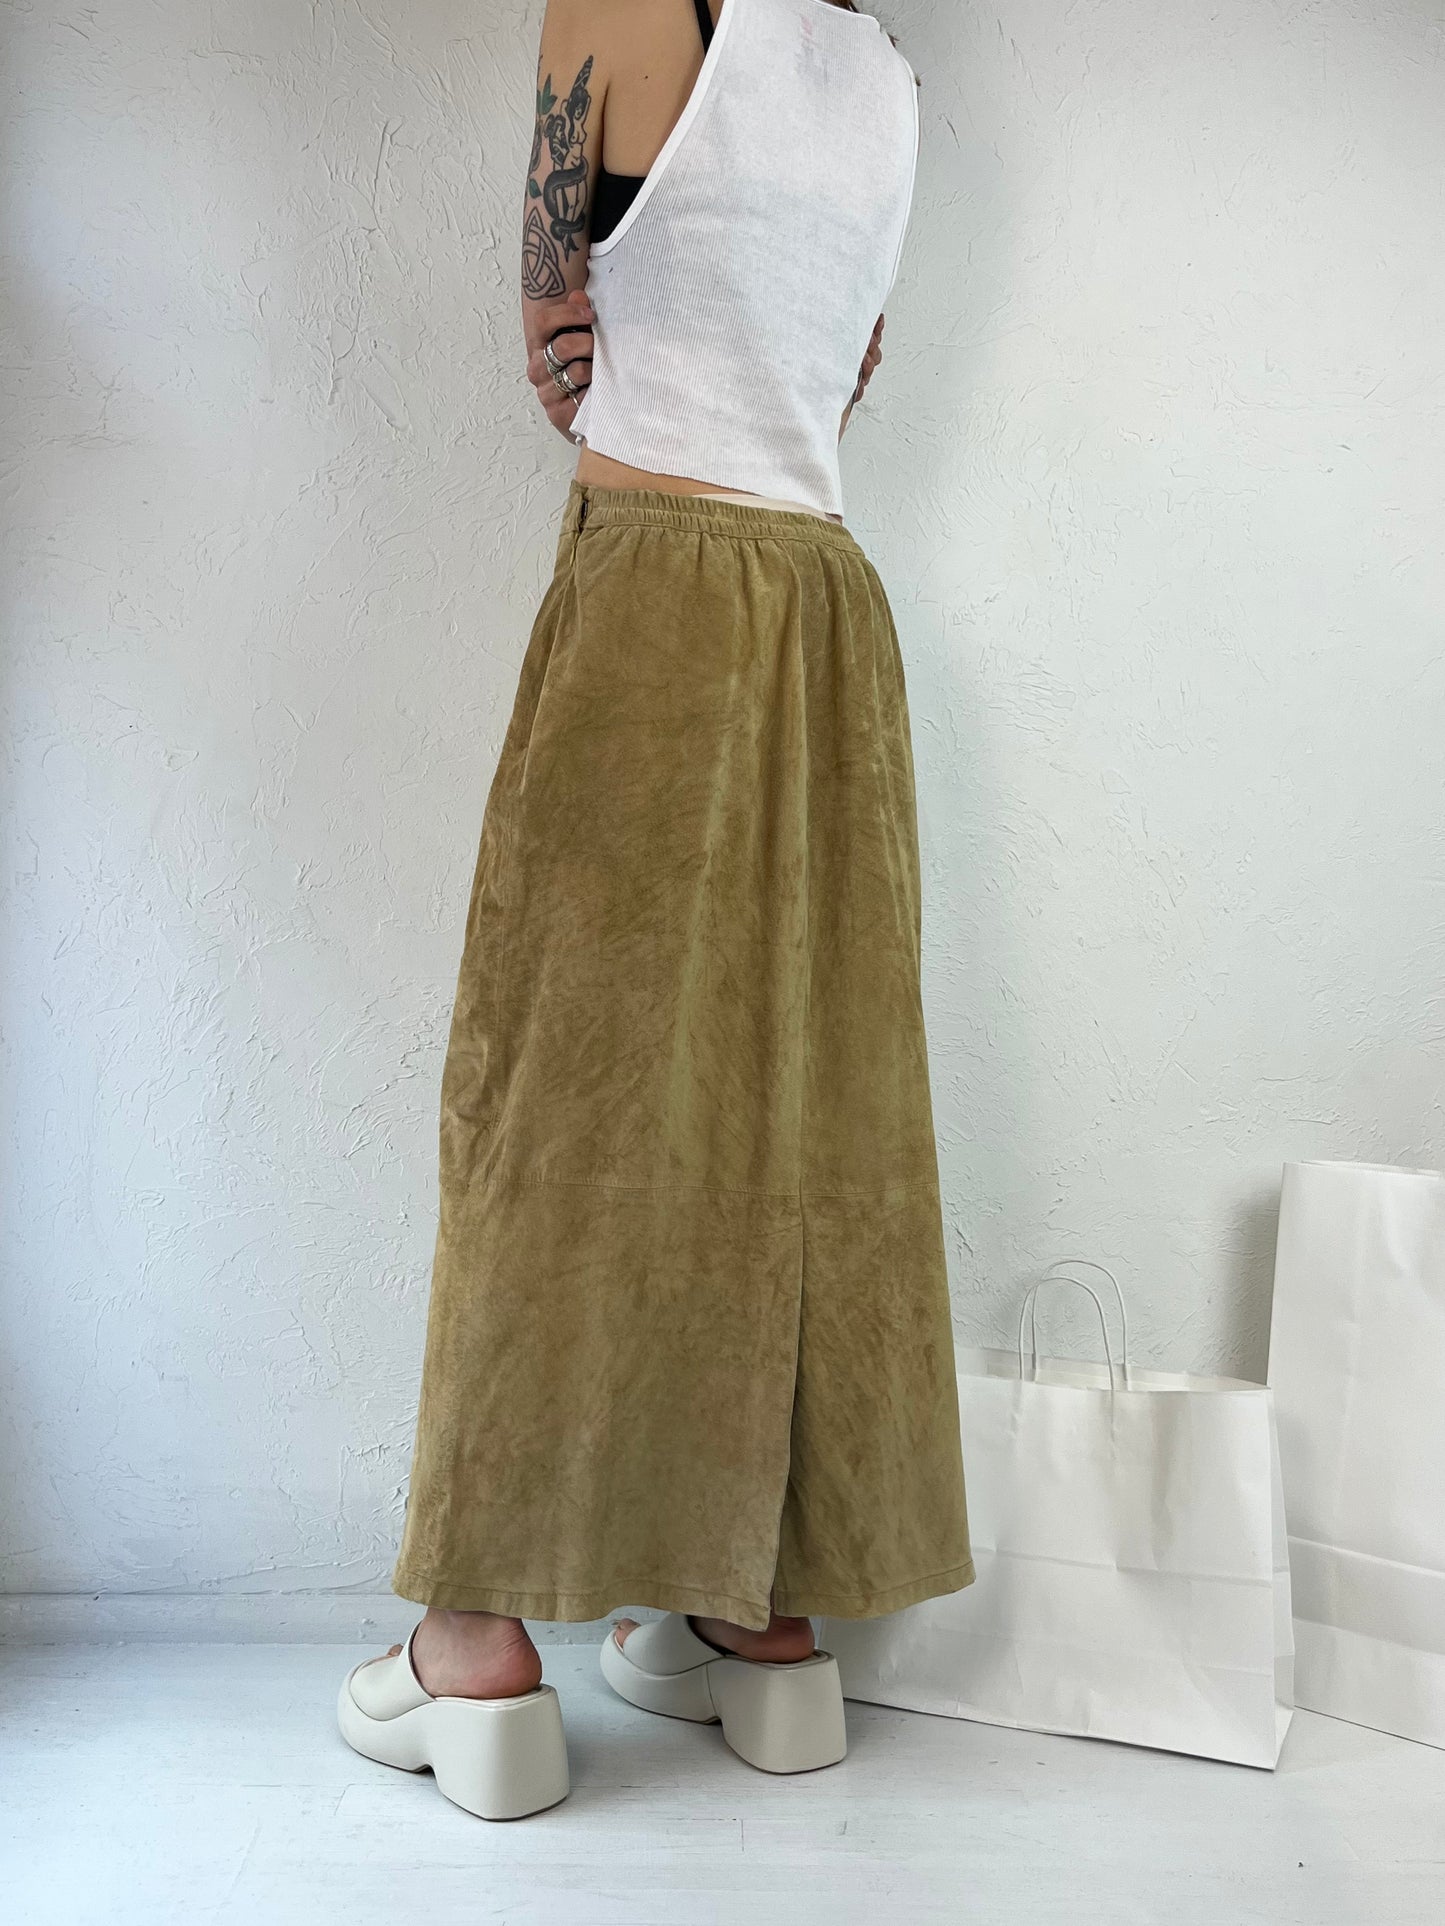 Y2K 'Stan Herman' Tan Suede Leather Maxi Skirt / Medium